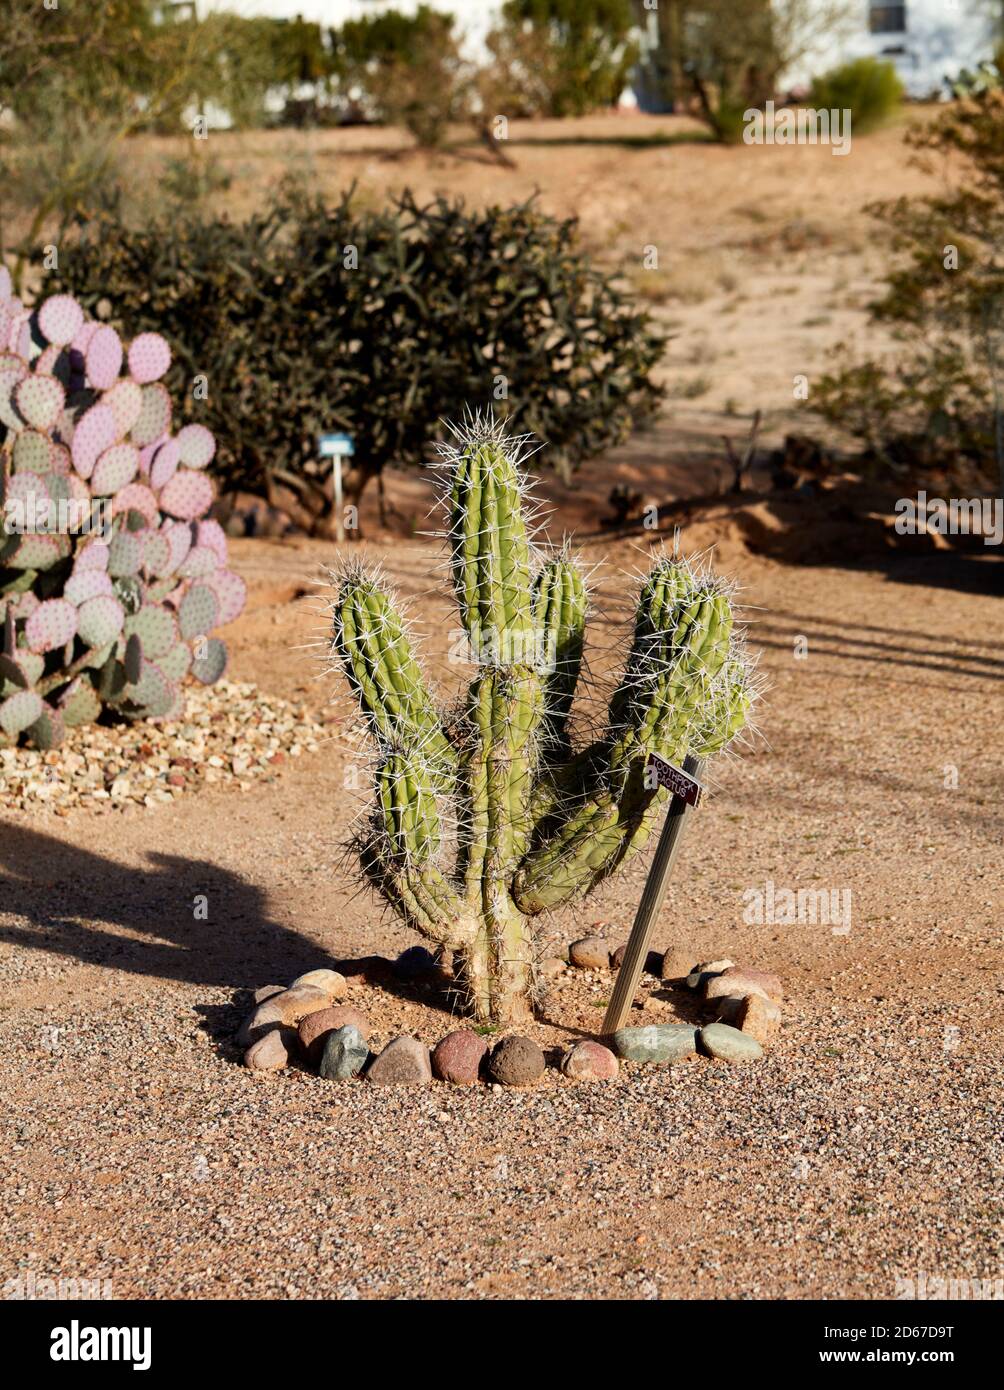 Toothpick Cactus, Arizona Stock Photo